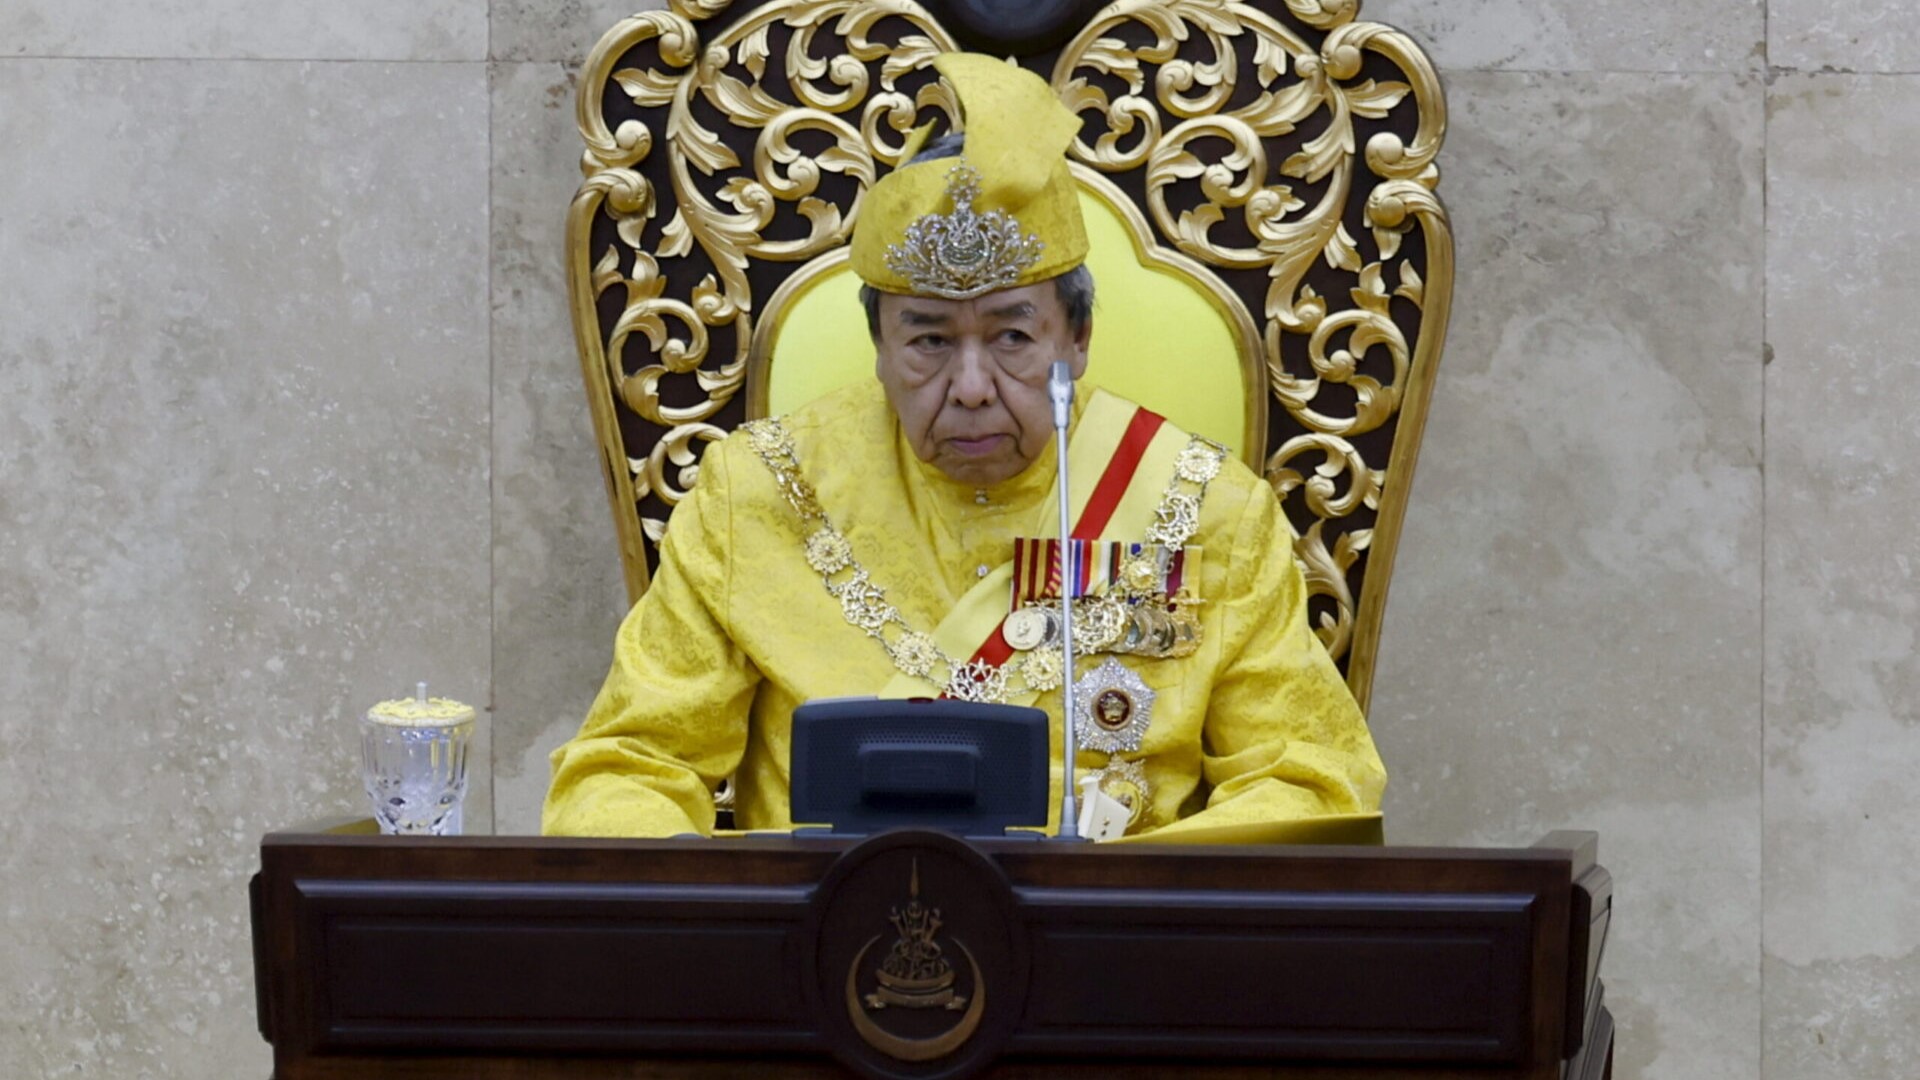 Sultan Selangor mahu orang Melayu ambil jalan perpaduan, kukuh keharmonian sesama masyarakat